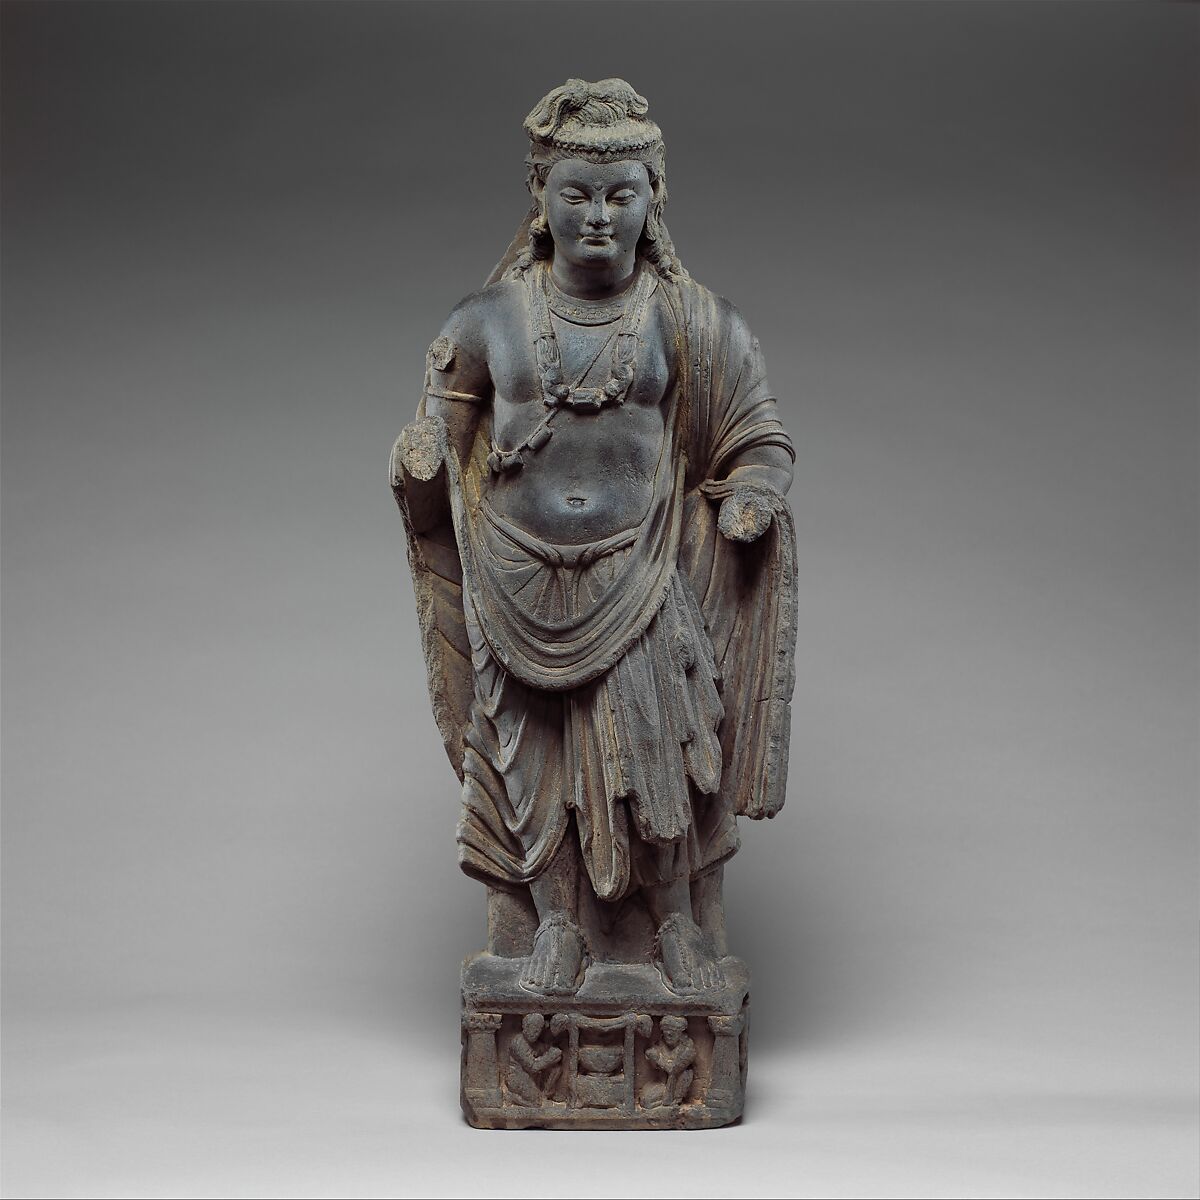 Standing Bodhisattva, probably Maitryeya (Buddha of the Future), Schist, Pakistan (ancient region of Gandhara) 